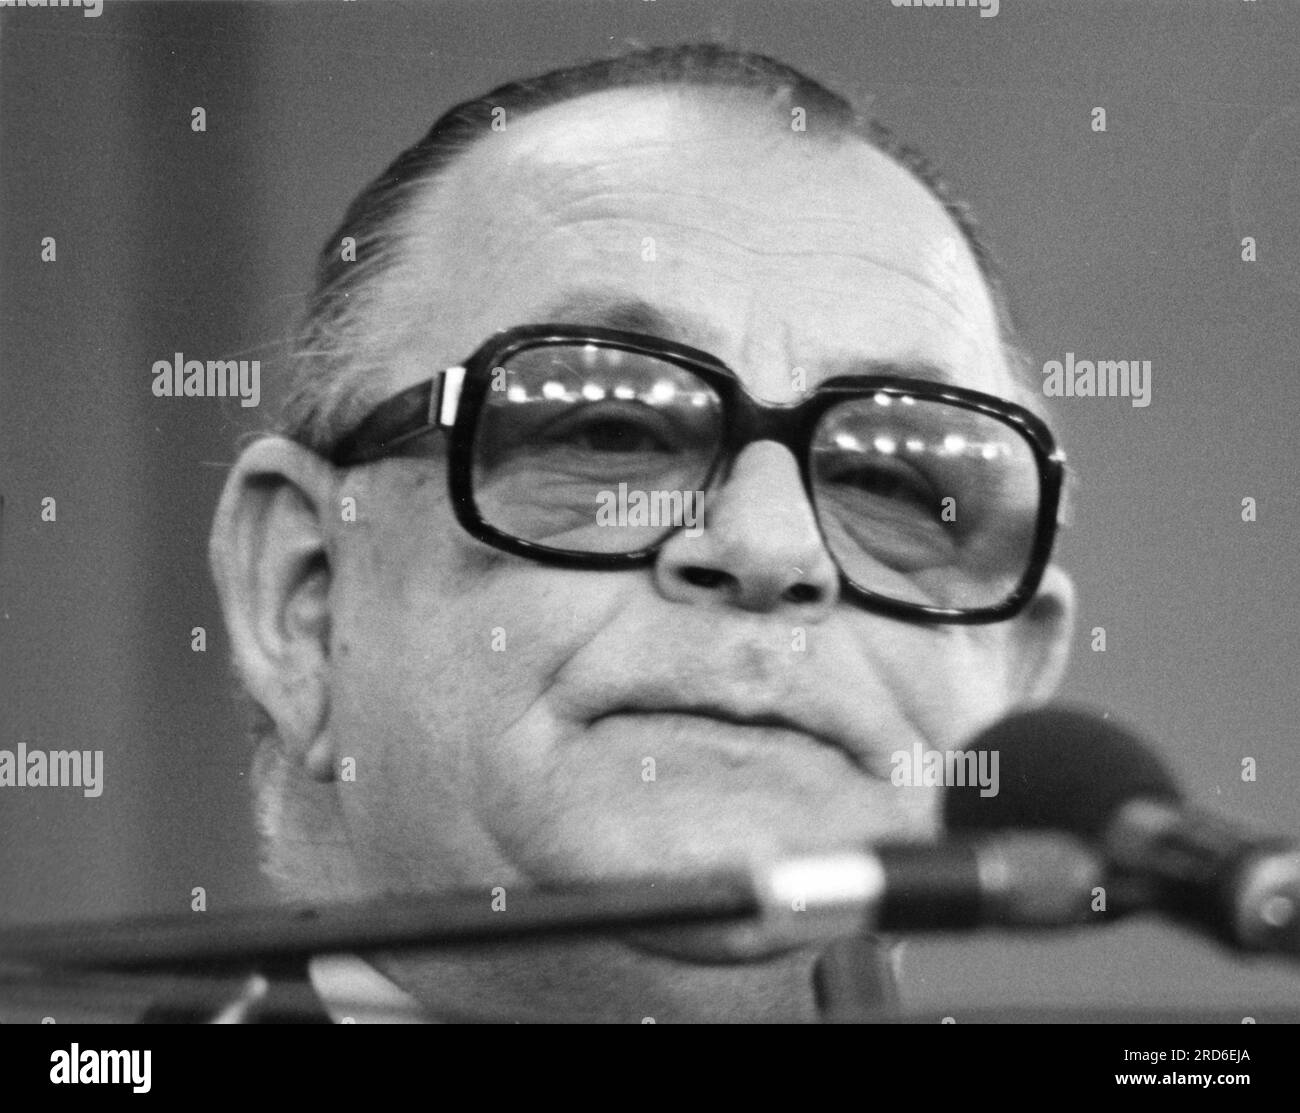 Wischnewski, Hans-Juergen, 24.7.1922 - 24,2.2005, deutscher Politiker (SPD), ADDITIONAL-RIGHTS-CLEARANCE-INFO-NOT-AVAILABLE Stockfoto